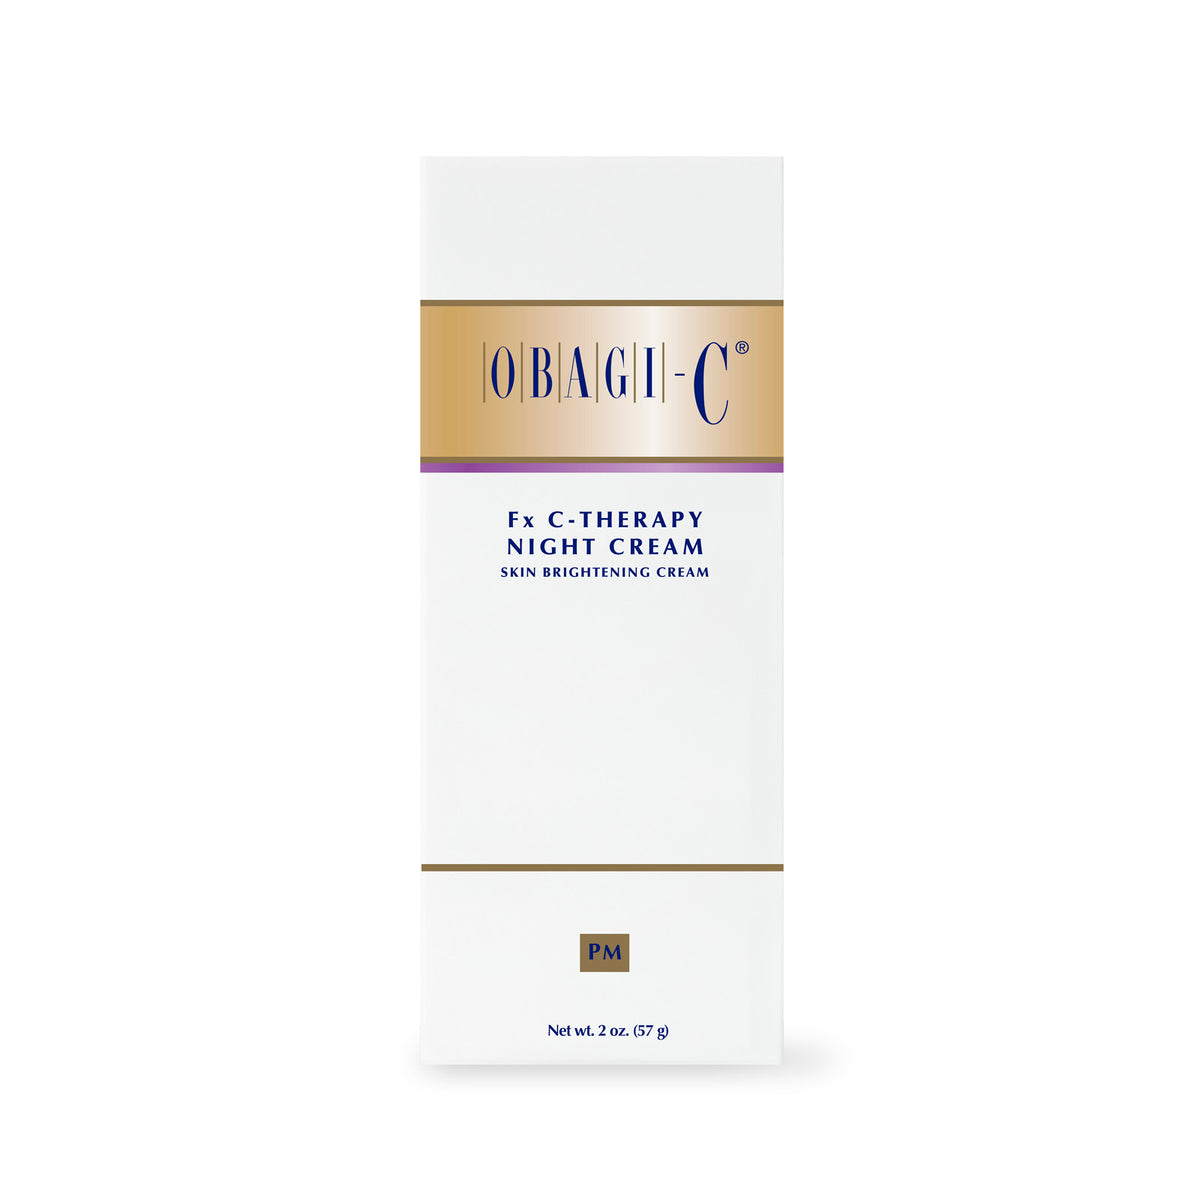 Obagi-C Fx C-Therapy Night Cream (2 oz)